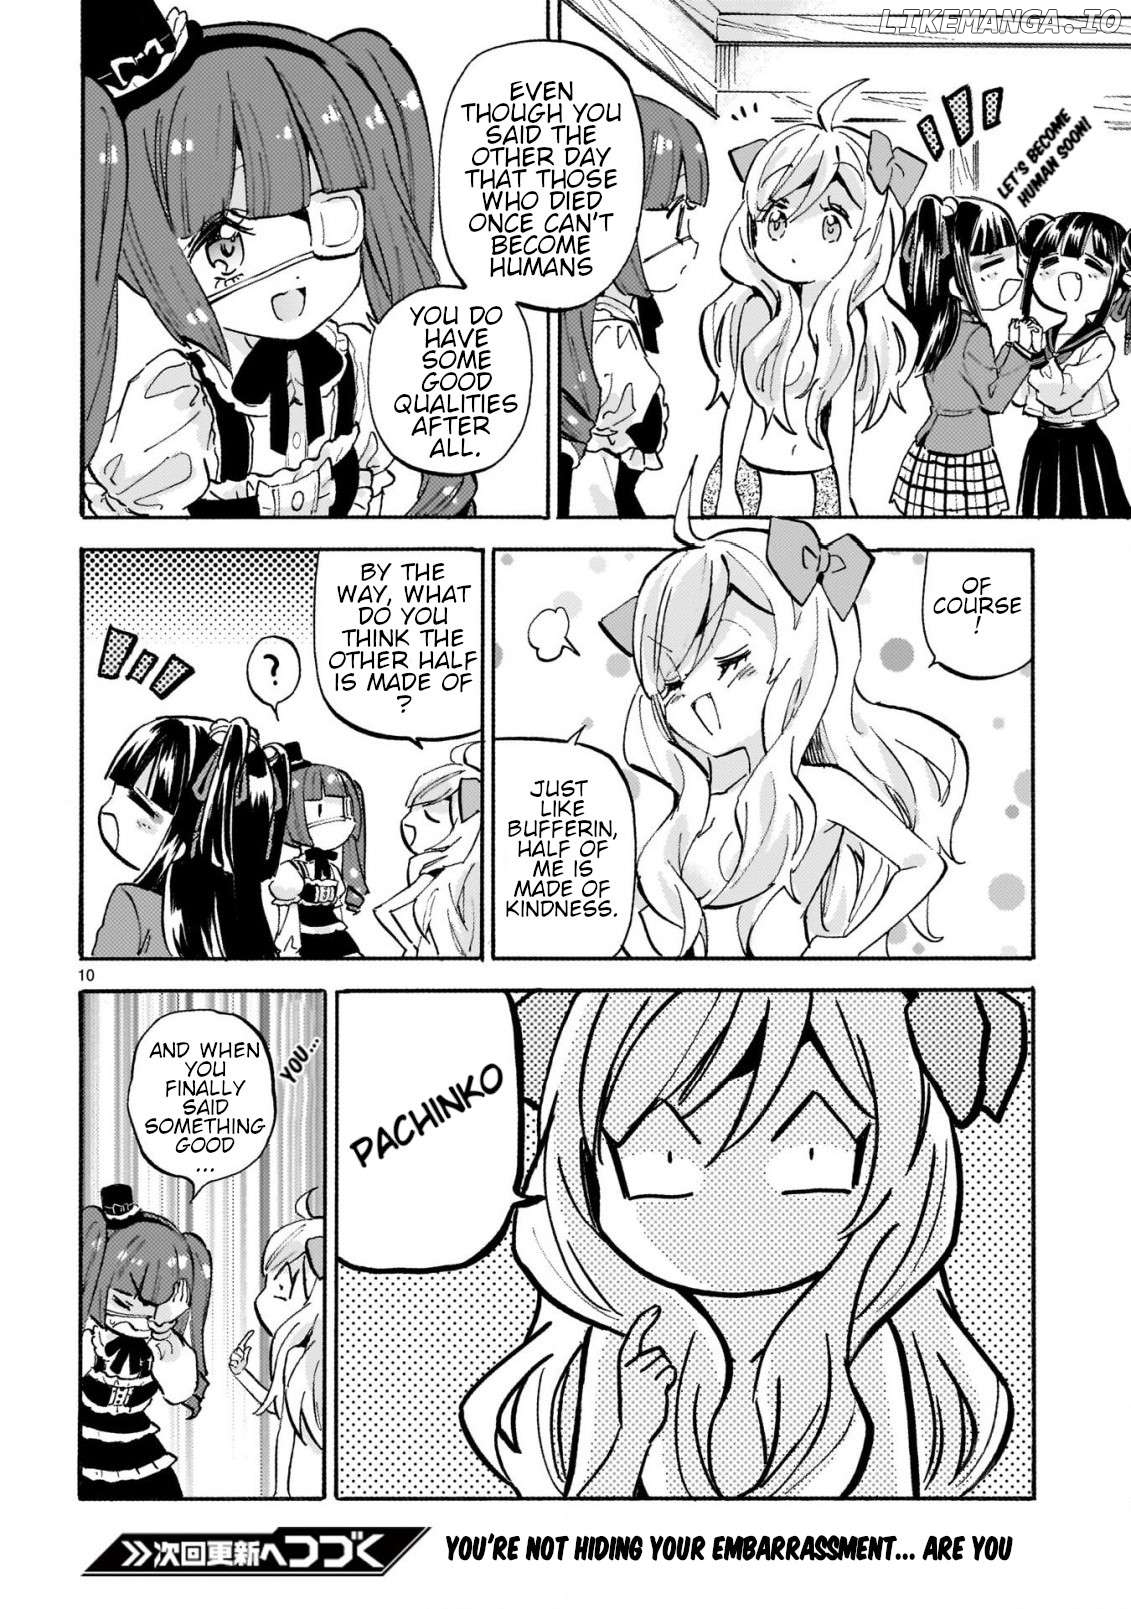 Jashin-chan Dropkick Chapter 255 - page 10